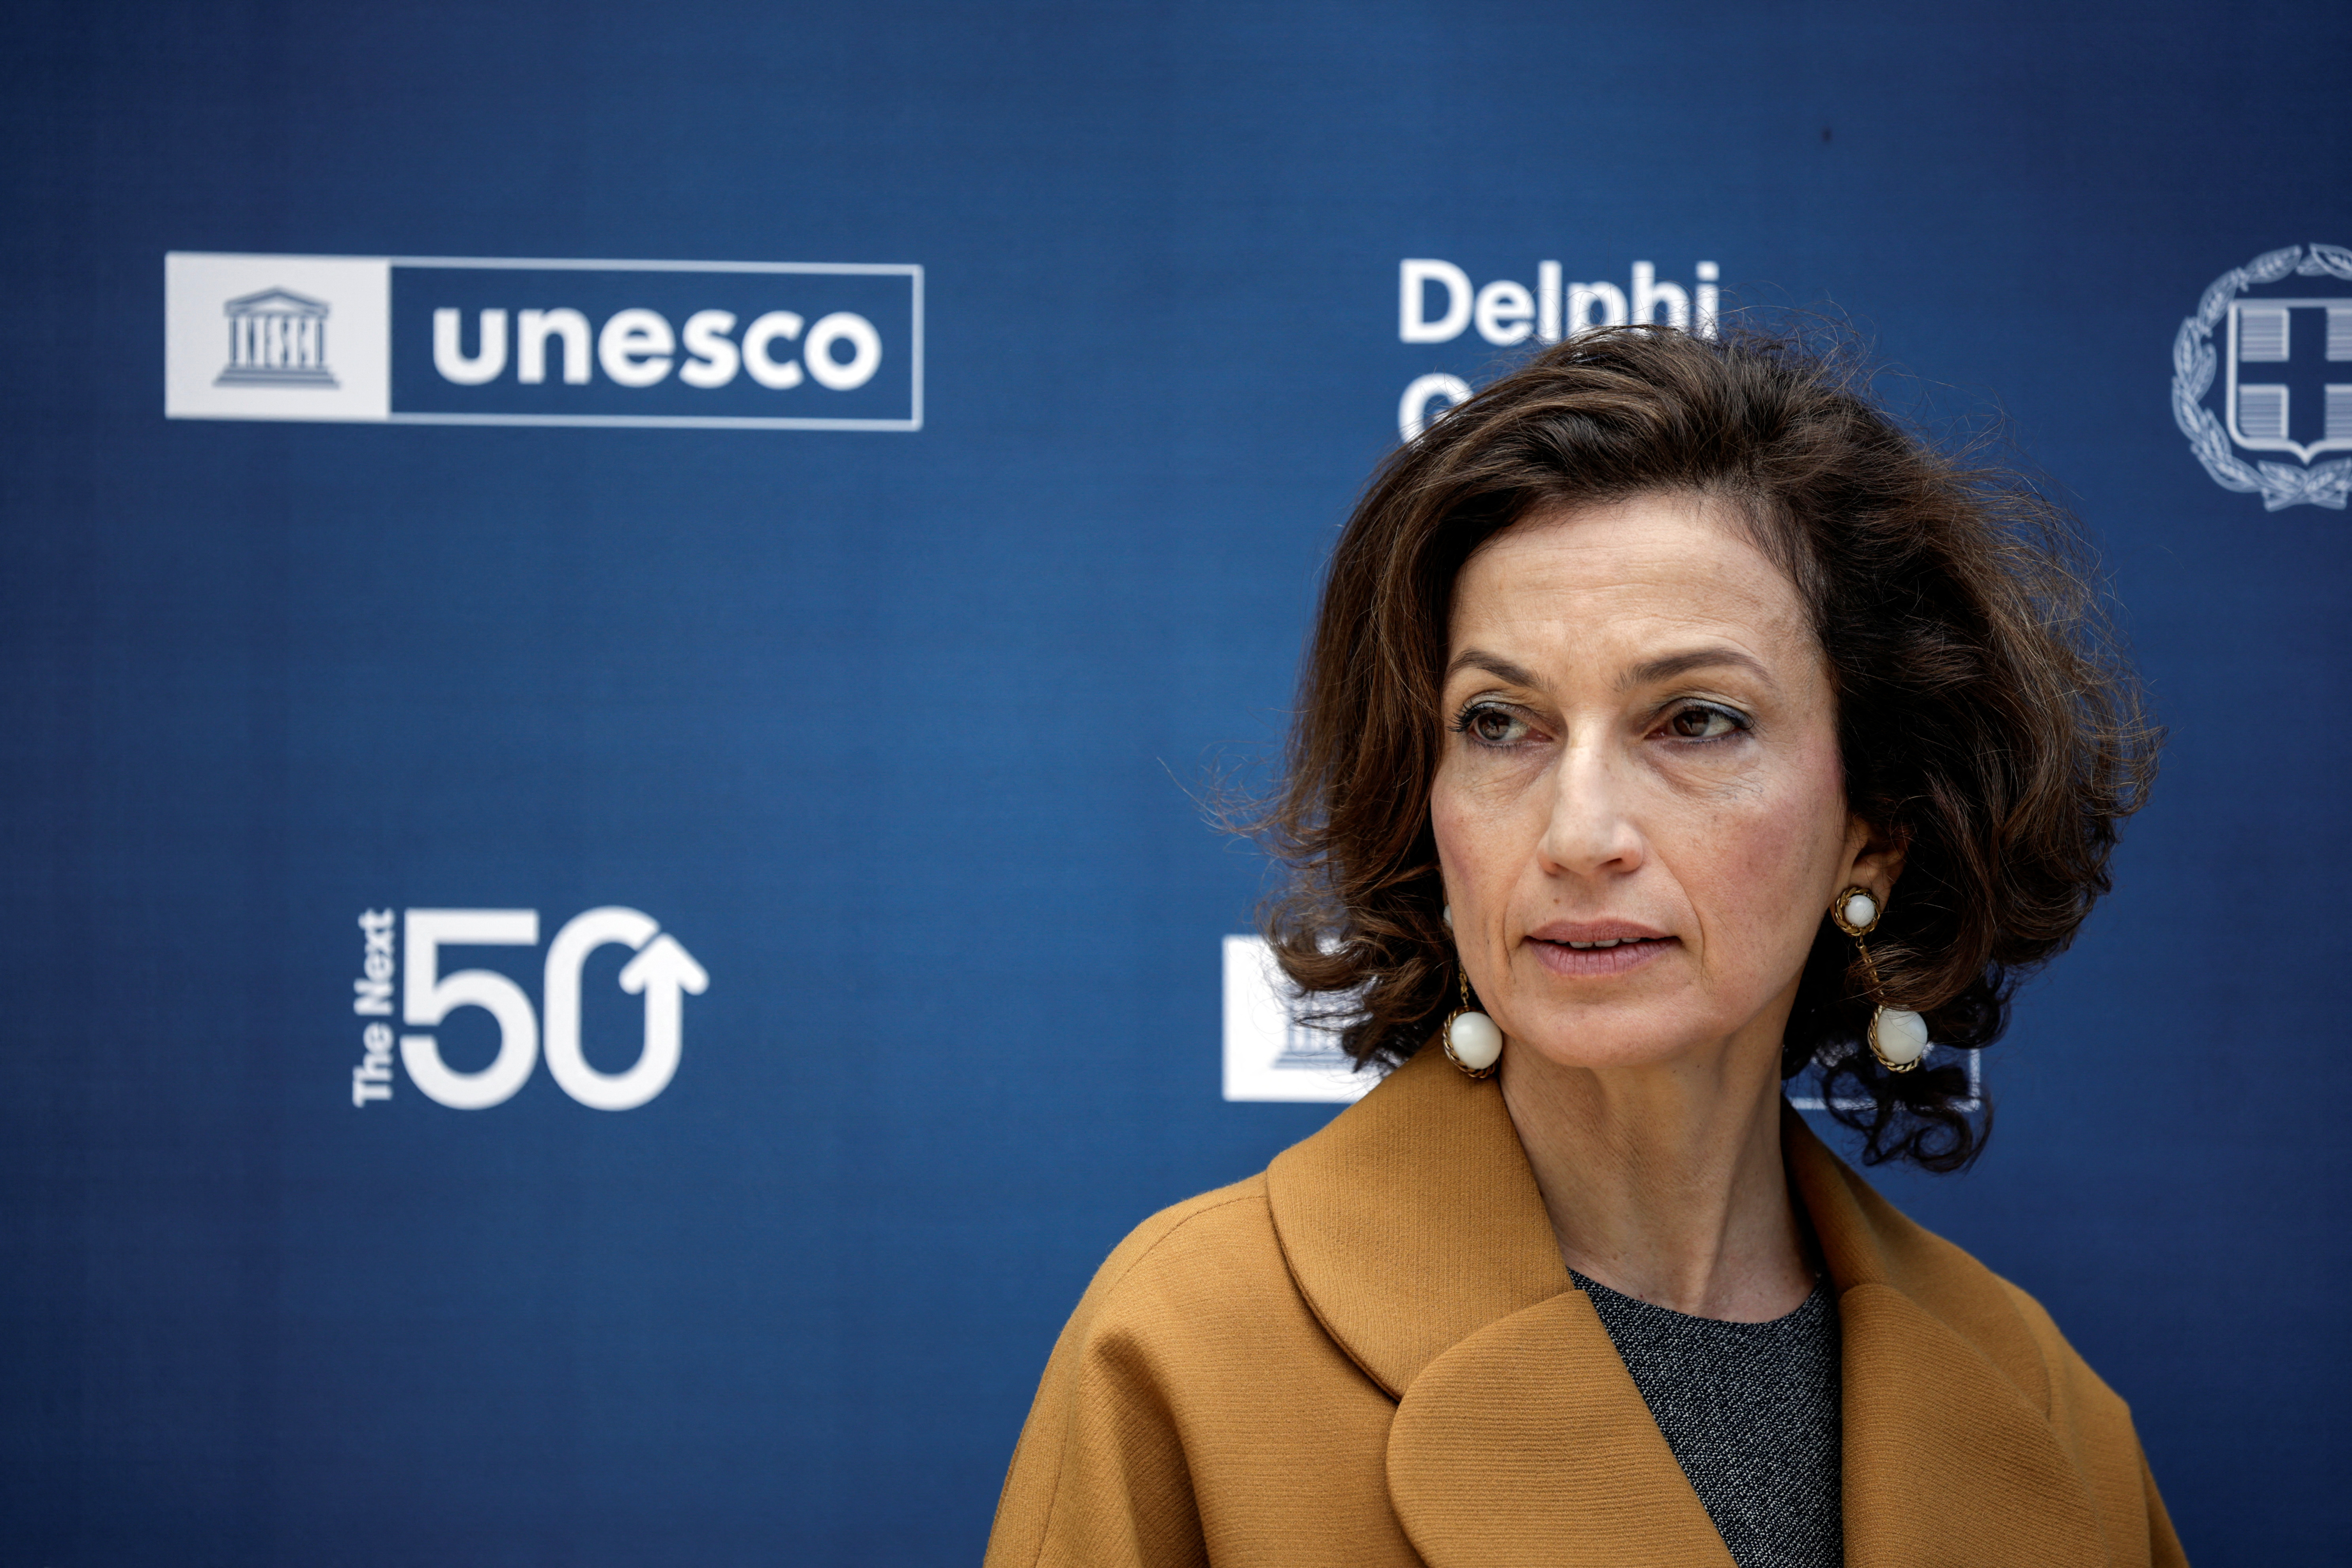 La Unesco instó a todos los países a implementar “sin demora” el Marco Ético Mundial sobre la Inteligencia Artificial